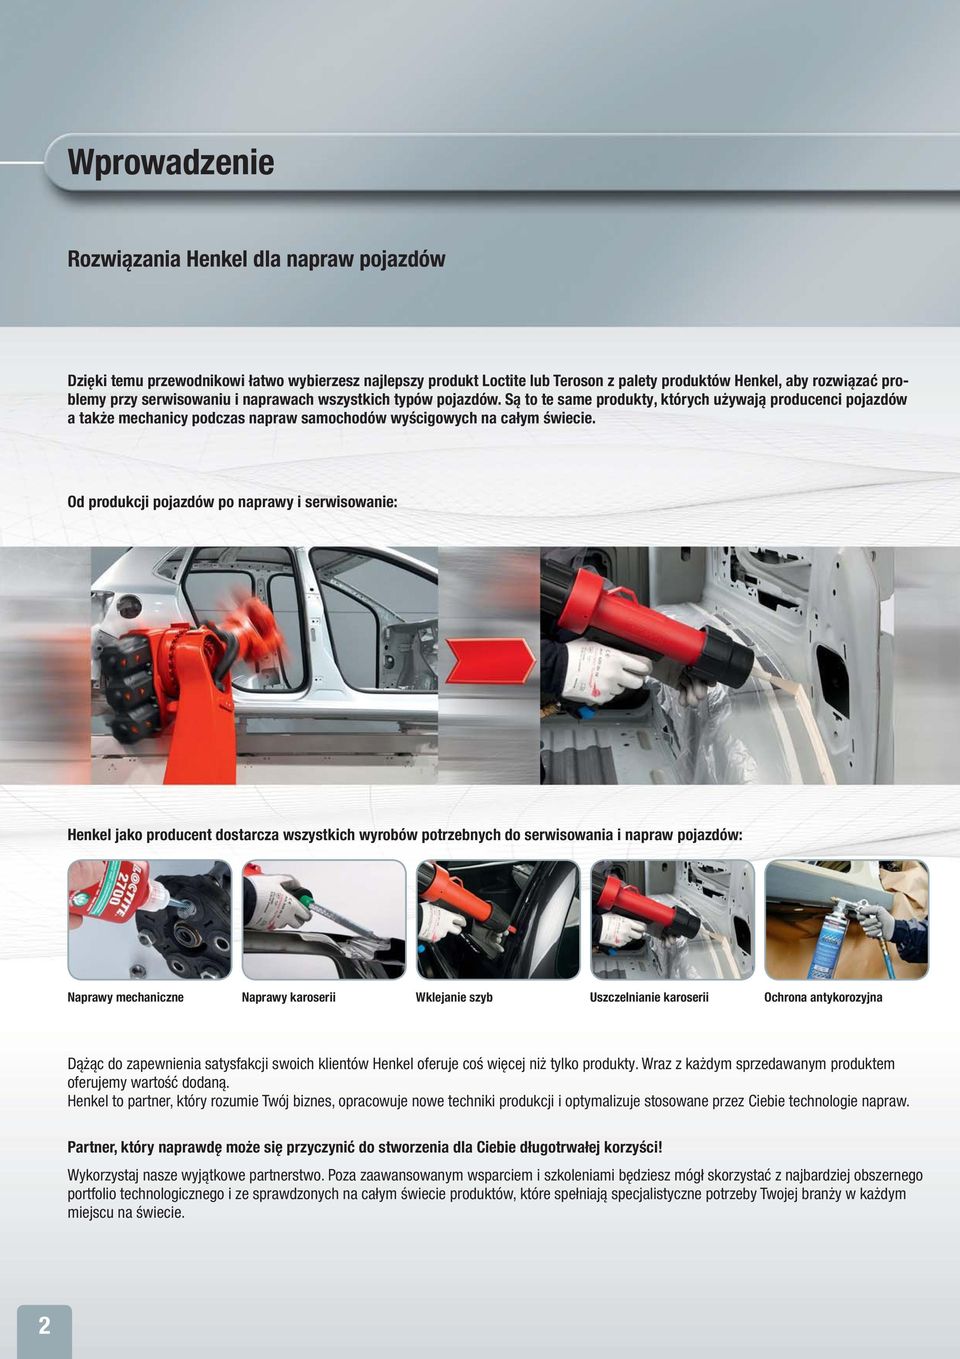 Od produkcji pojazdów po naprawy i serwisowanie: Henkel jako producent dostarcza wszystkich wyrobów potrzebnych do serwisowania i napraw pojazdów: Naprawy mechaniczne Naprawy karoserii Wklejanie szyb